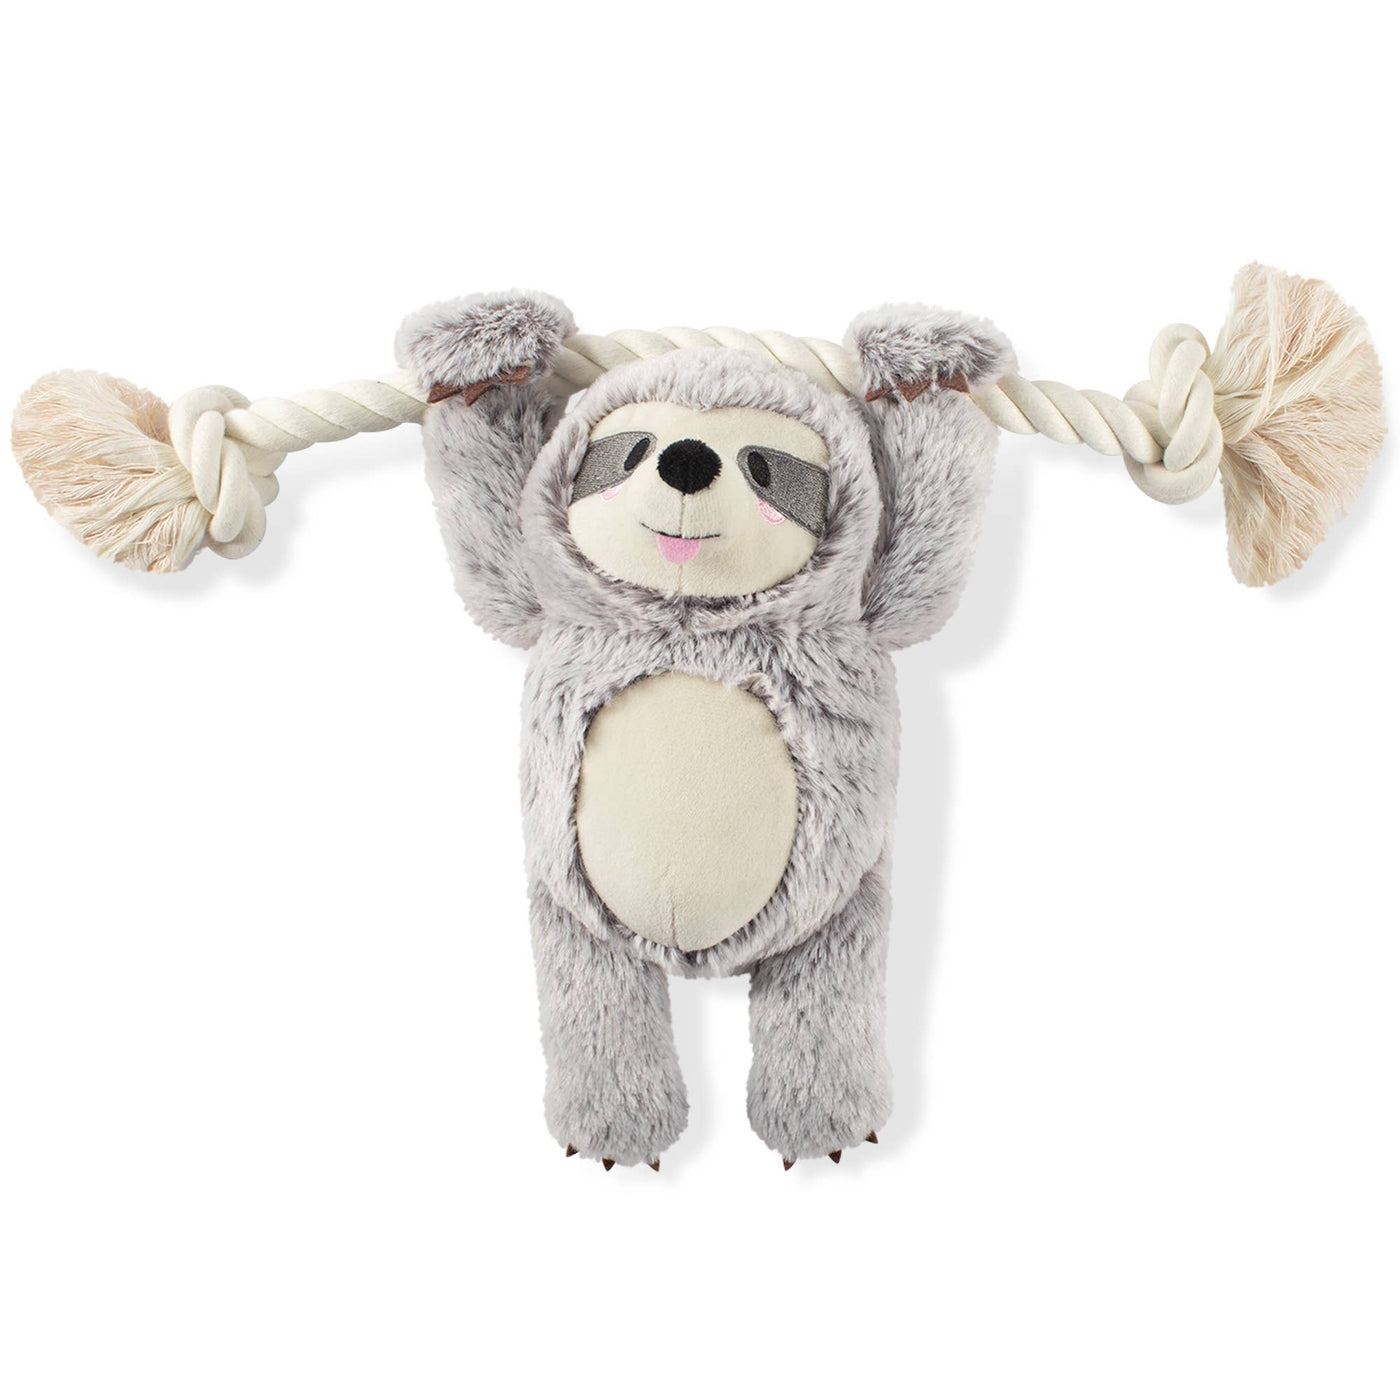 Fringe Girlie Sloth on a Rope Dog Toy *